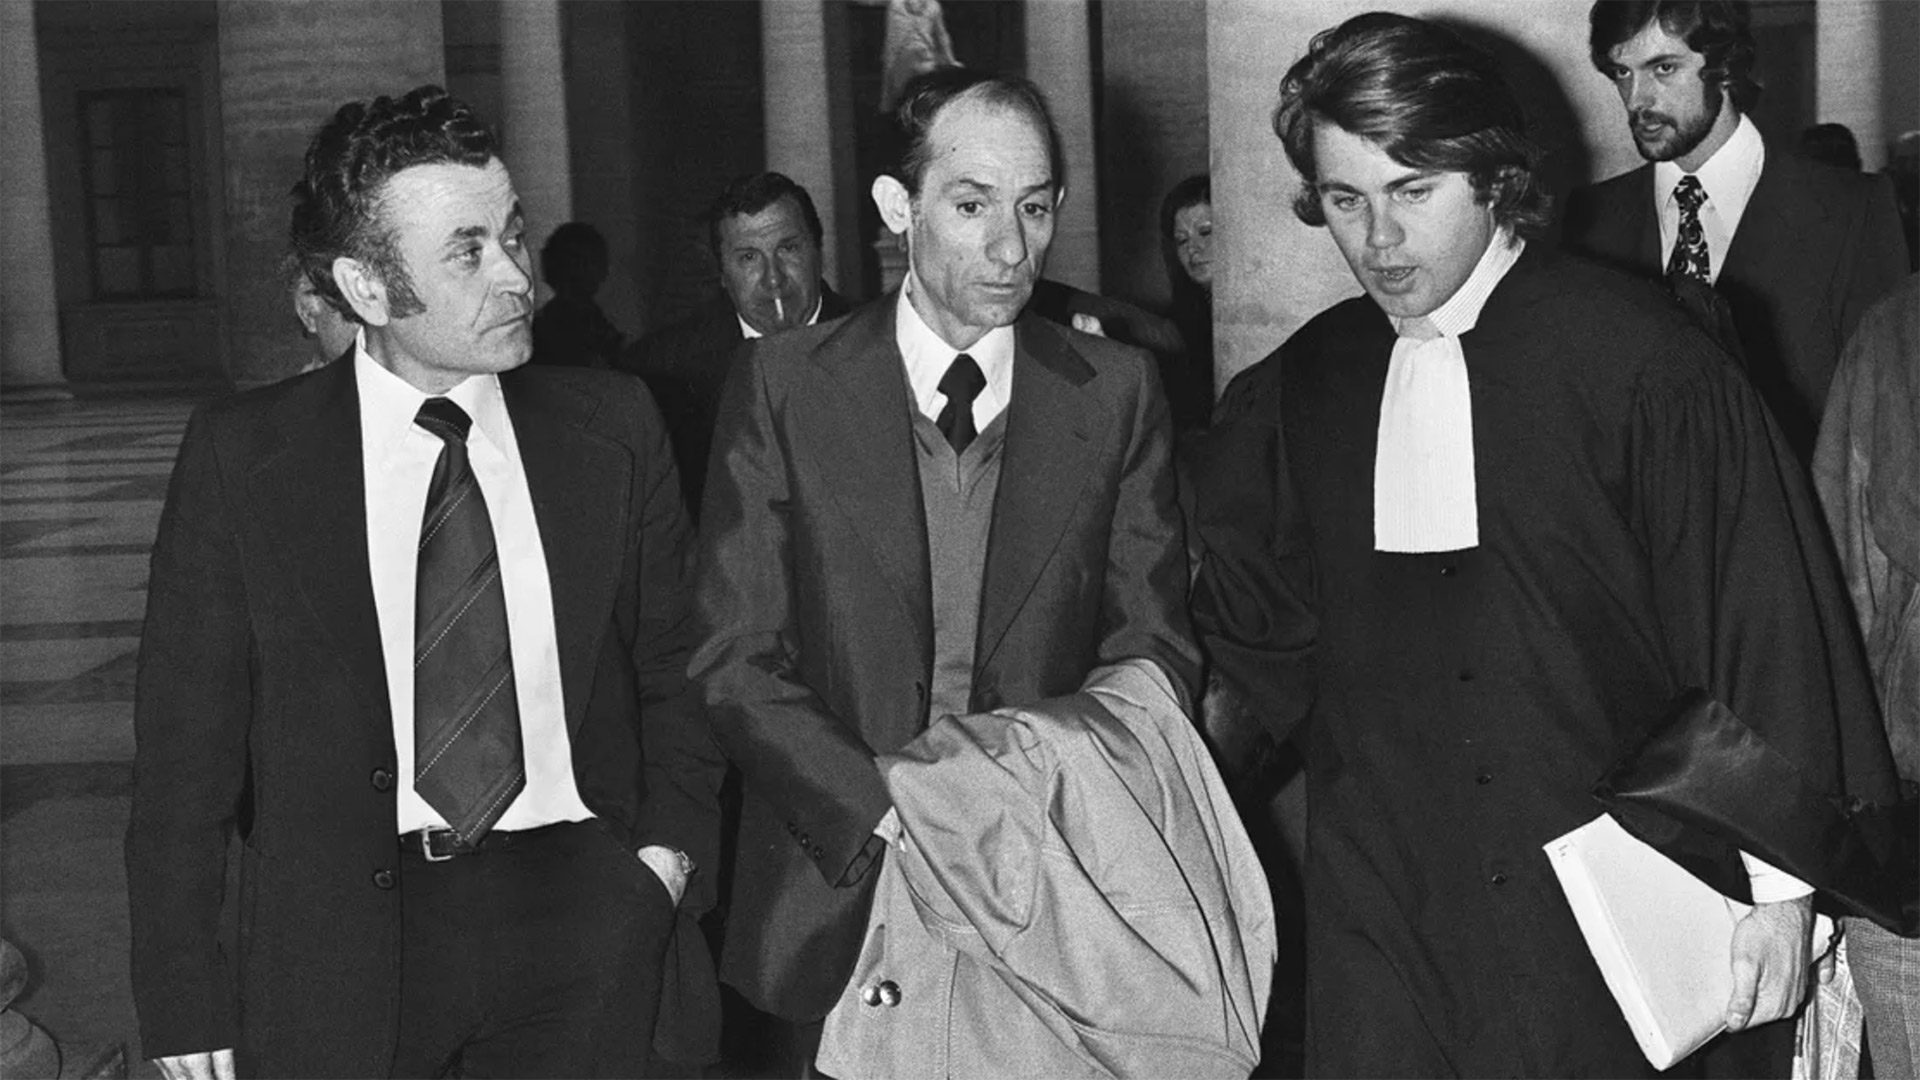 El padre de la pequeña Marie-Dolores, Pierre Rambla, llegando al juicio contra Christian Ranucci por el crimen de su hija, en marzo de 1976 (GERARD FOUET / AFP).